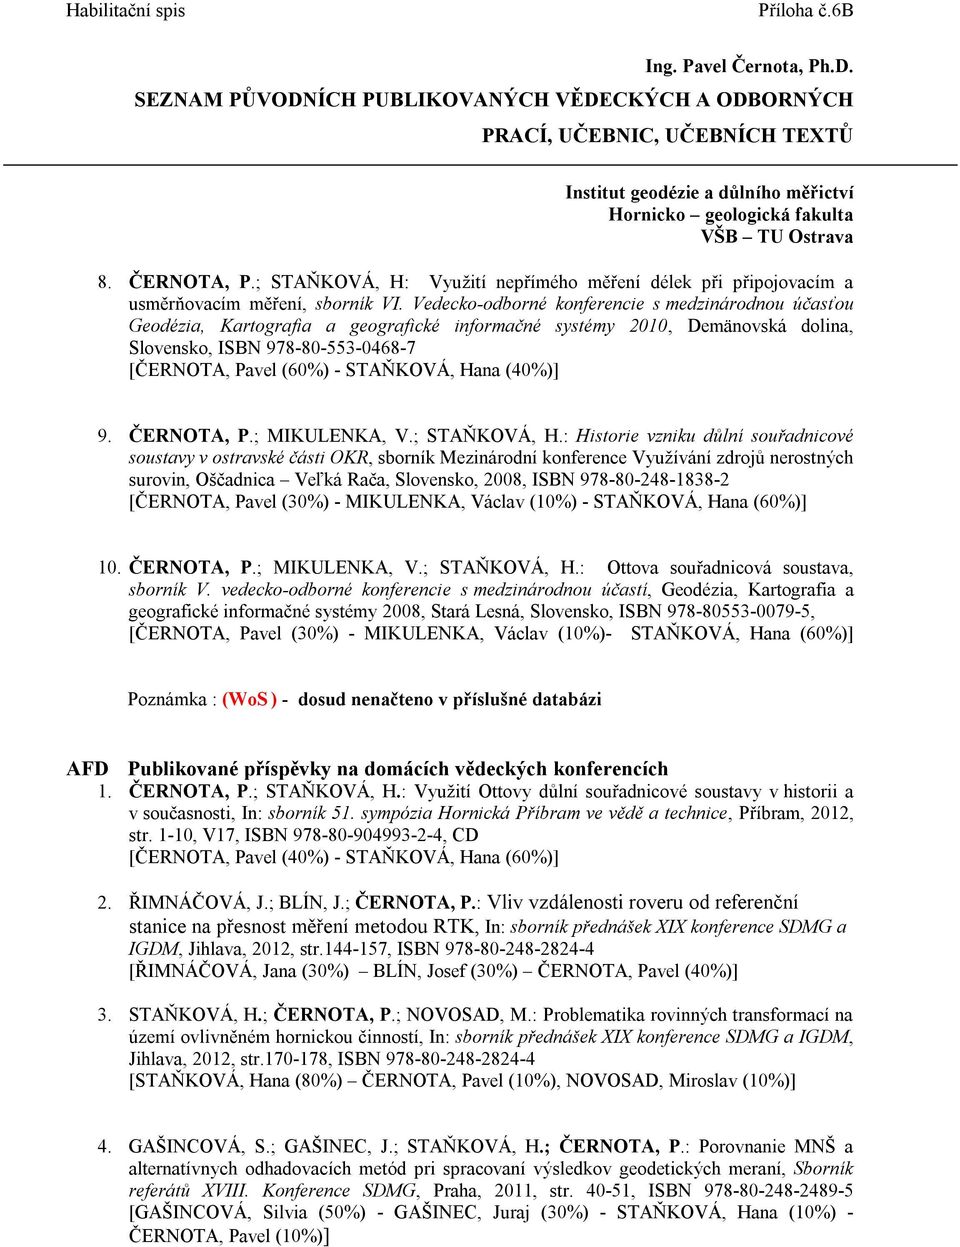 Hana (40%)] 9. ČERNOTA, P.; MIKULENKA, V.; STAŇKOVÁ, H.